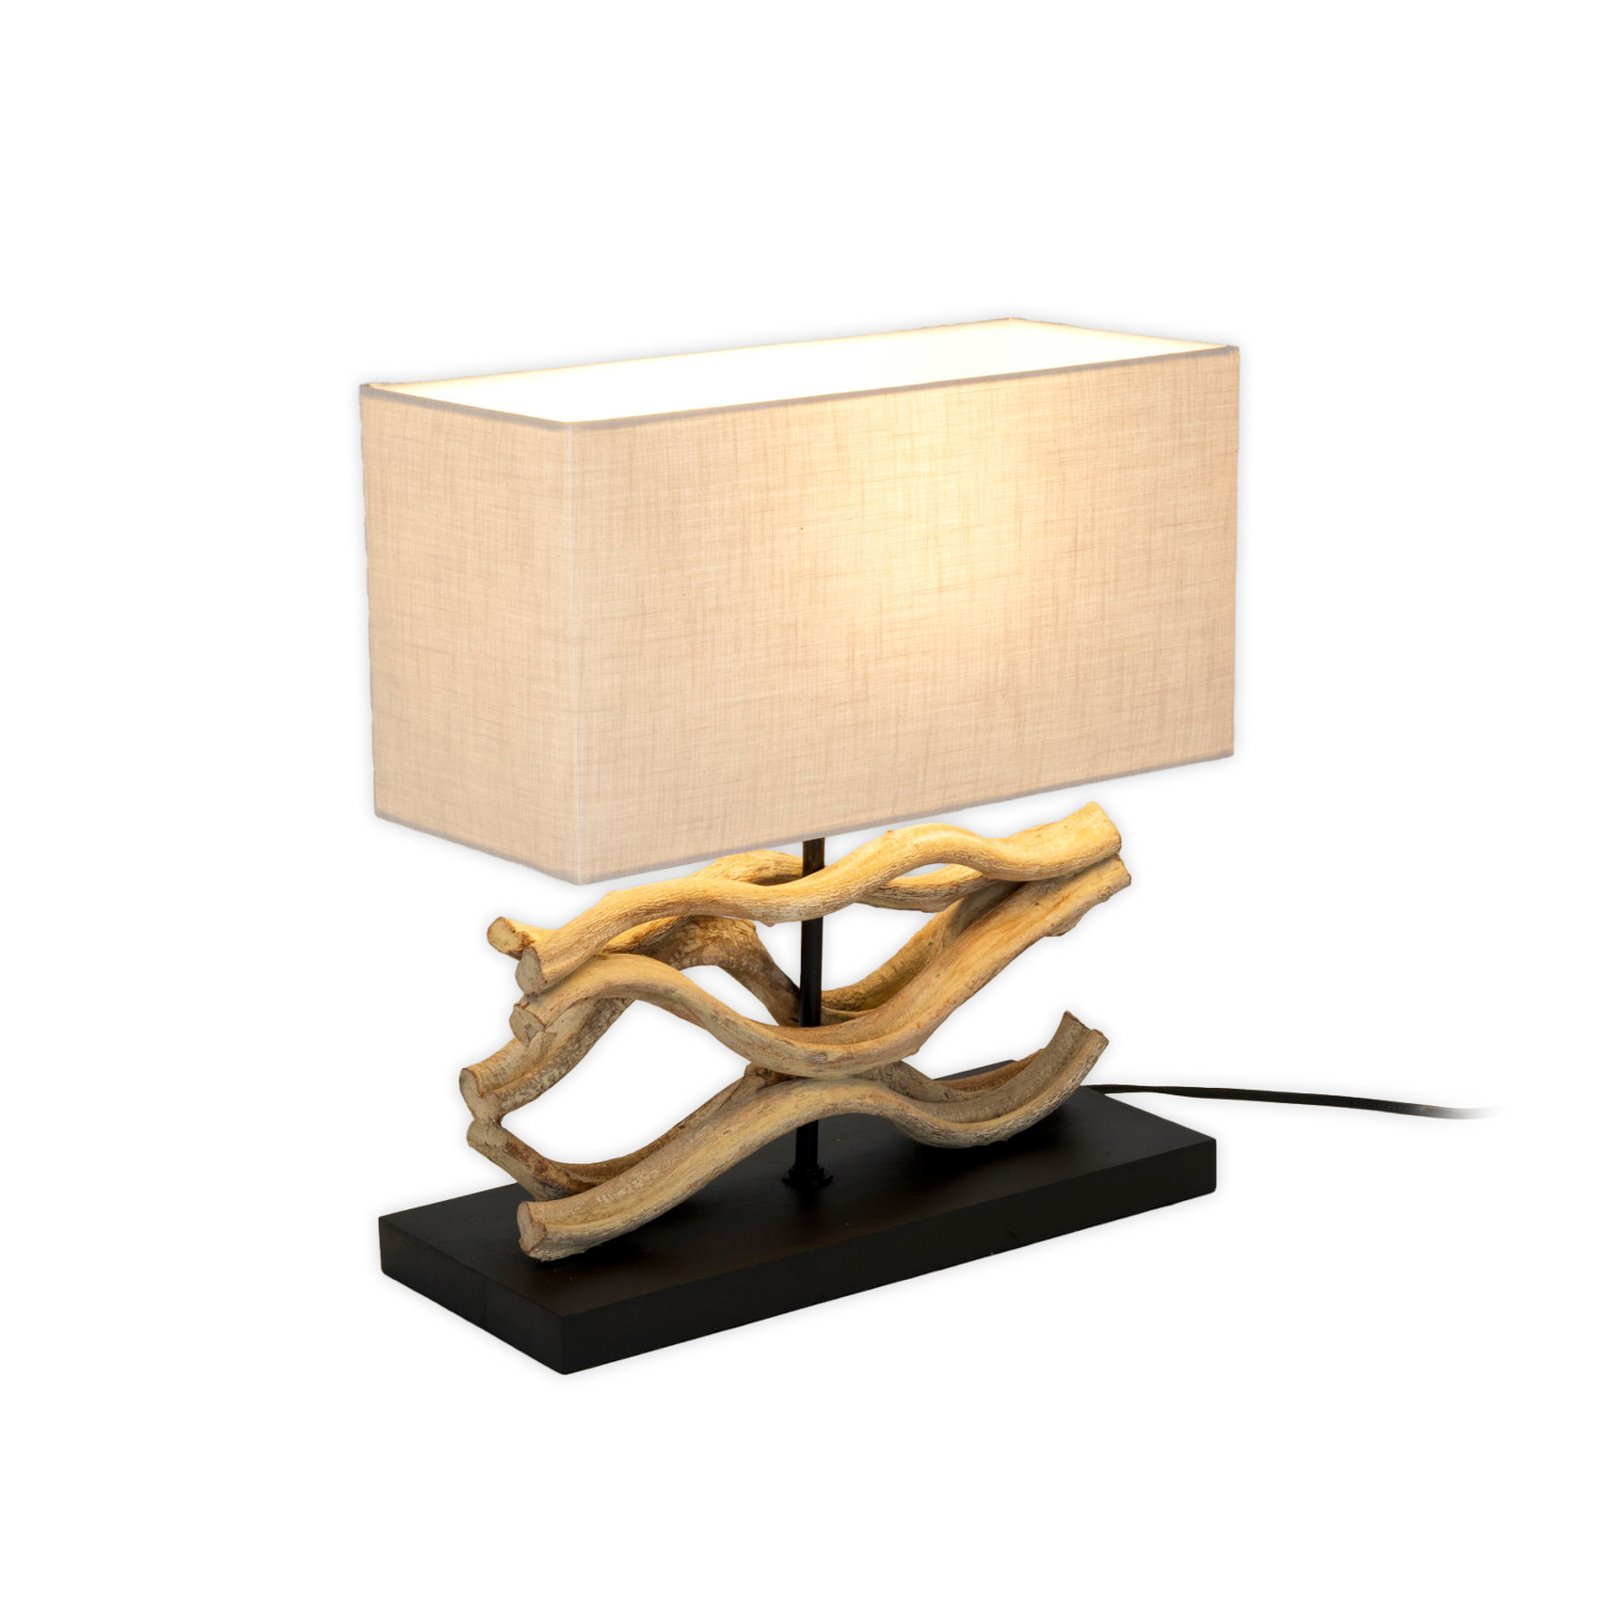 Lampe à poser Panarea, couleur bois/beige, hauteur 42 cm, bois